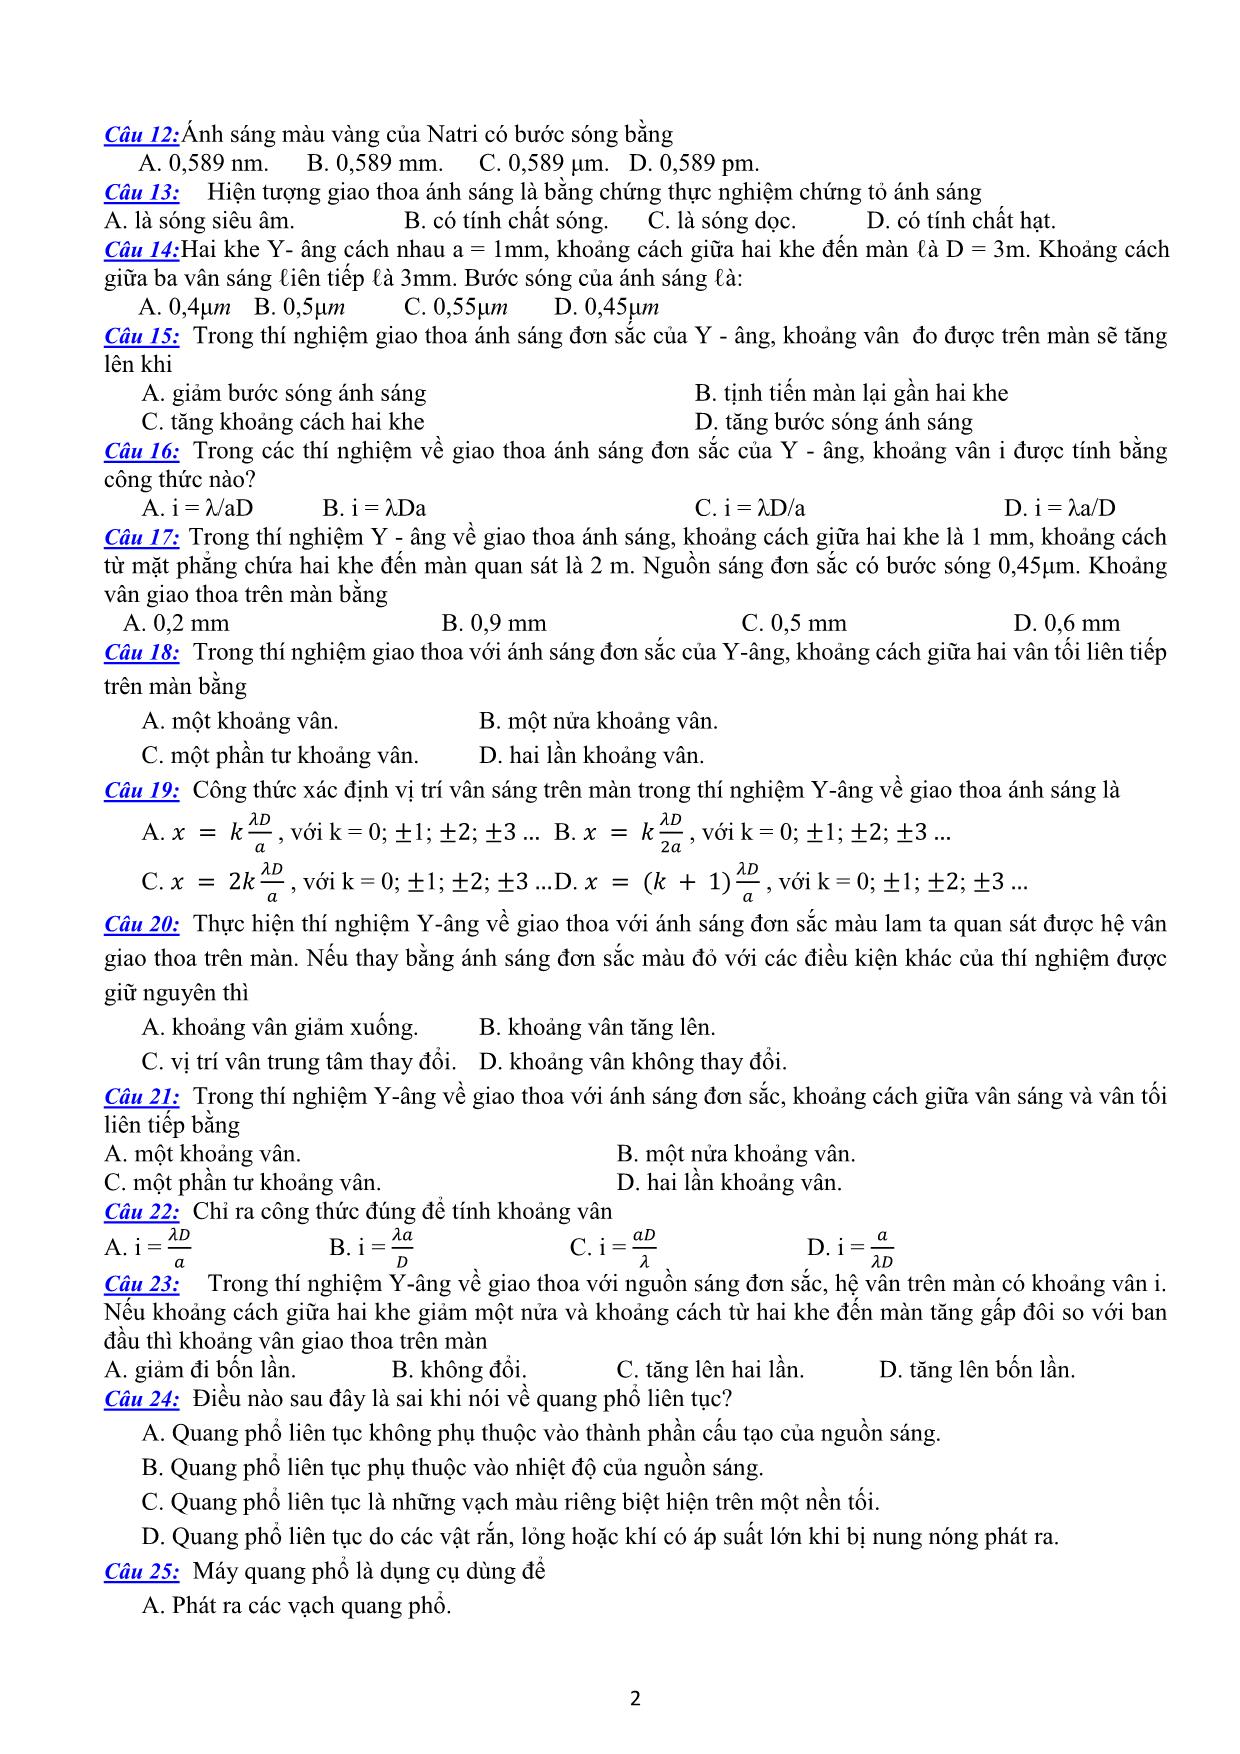 Đề cương ôn tập học kì II môn Vật lý 12 trang 2